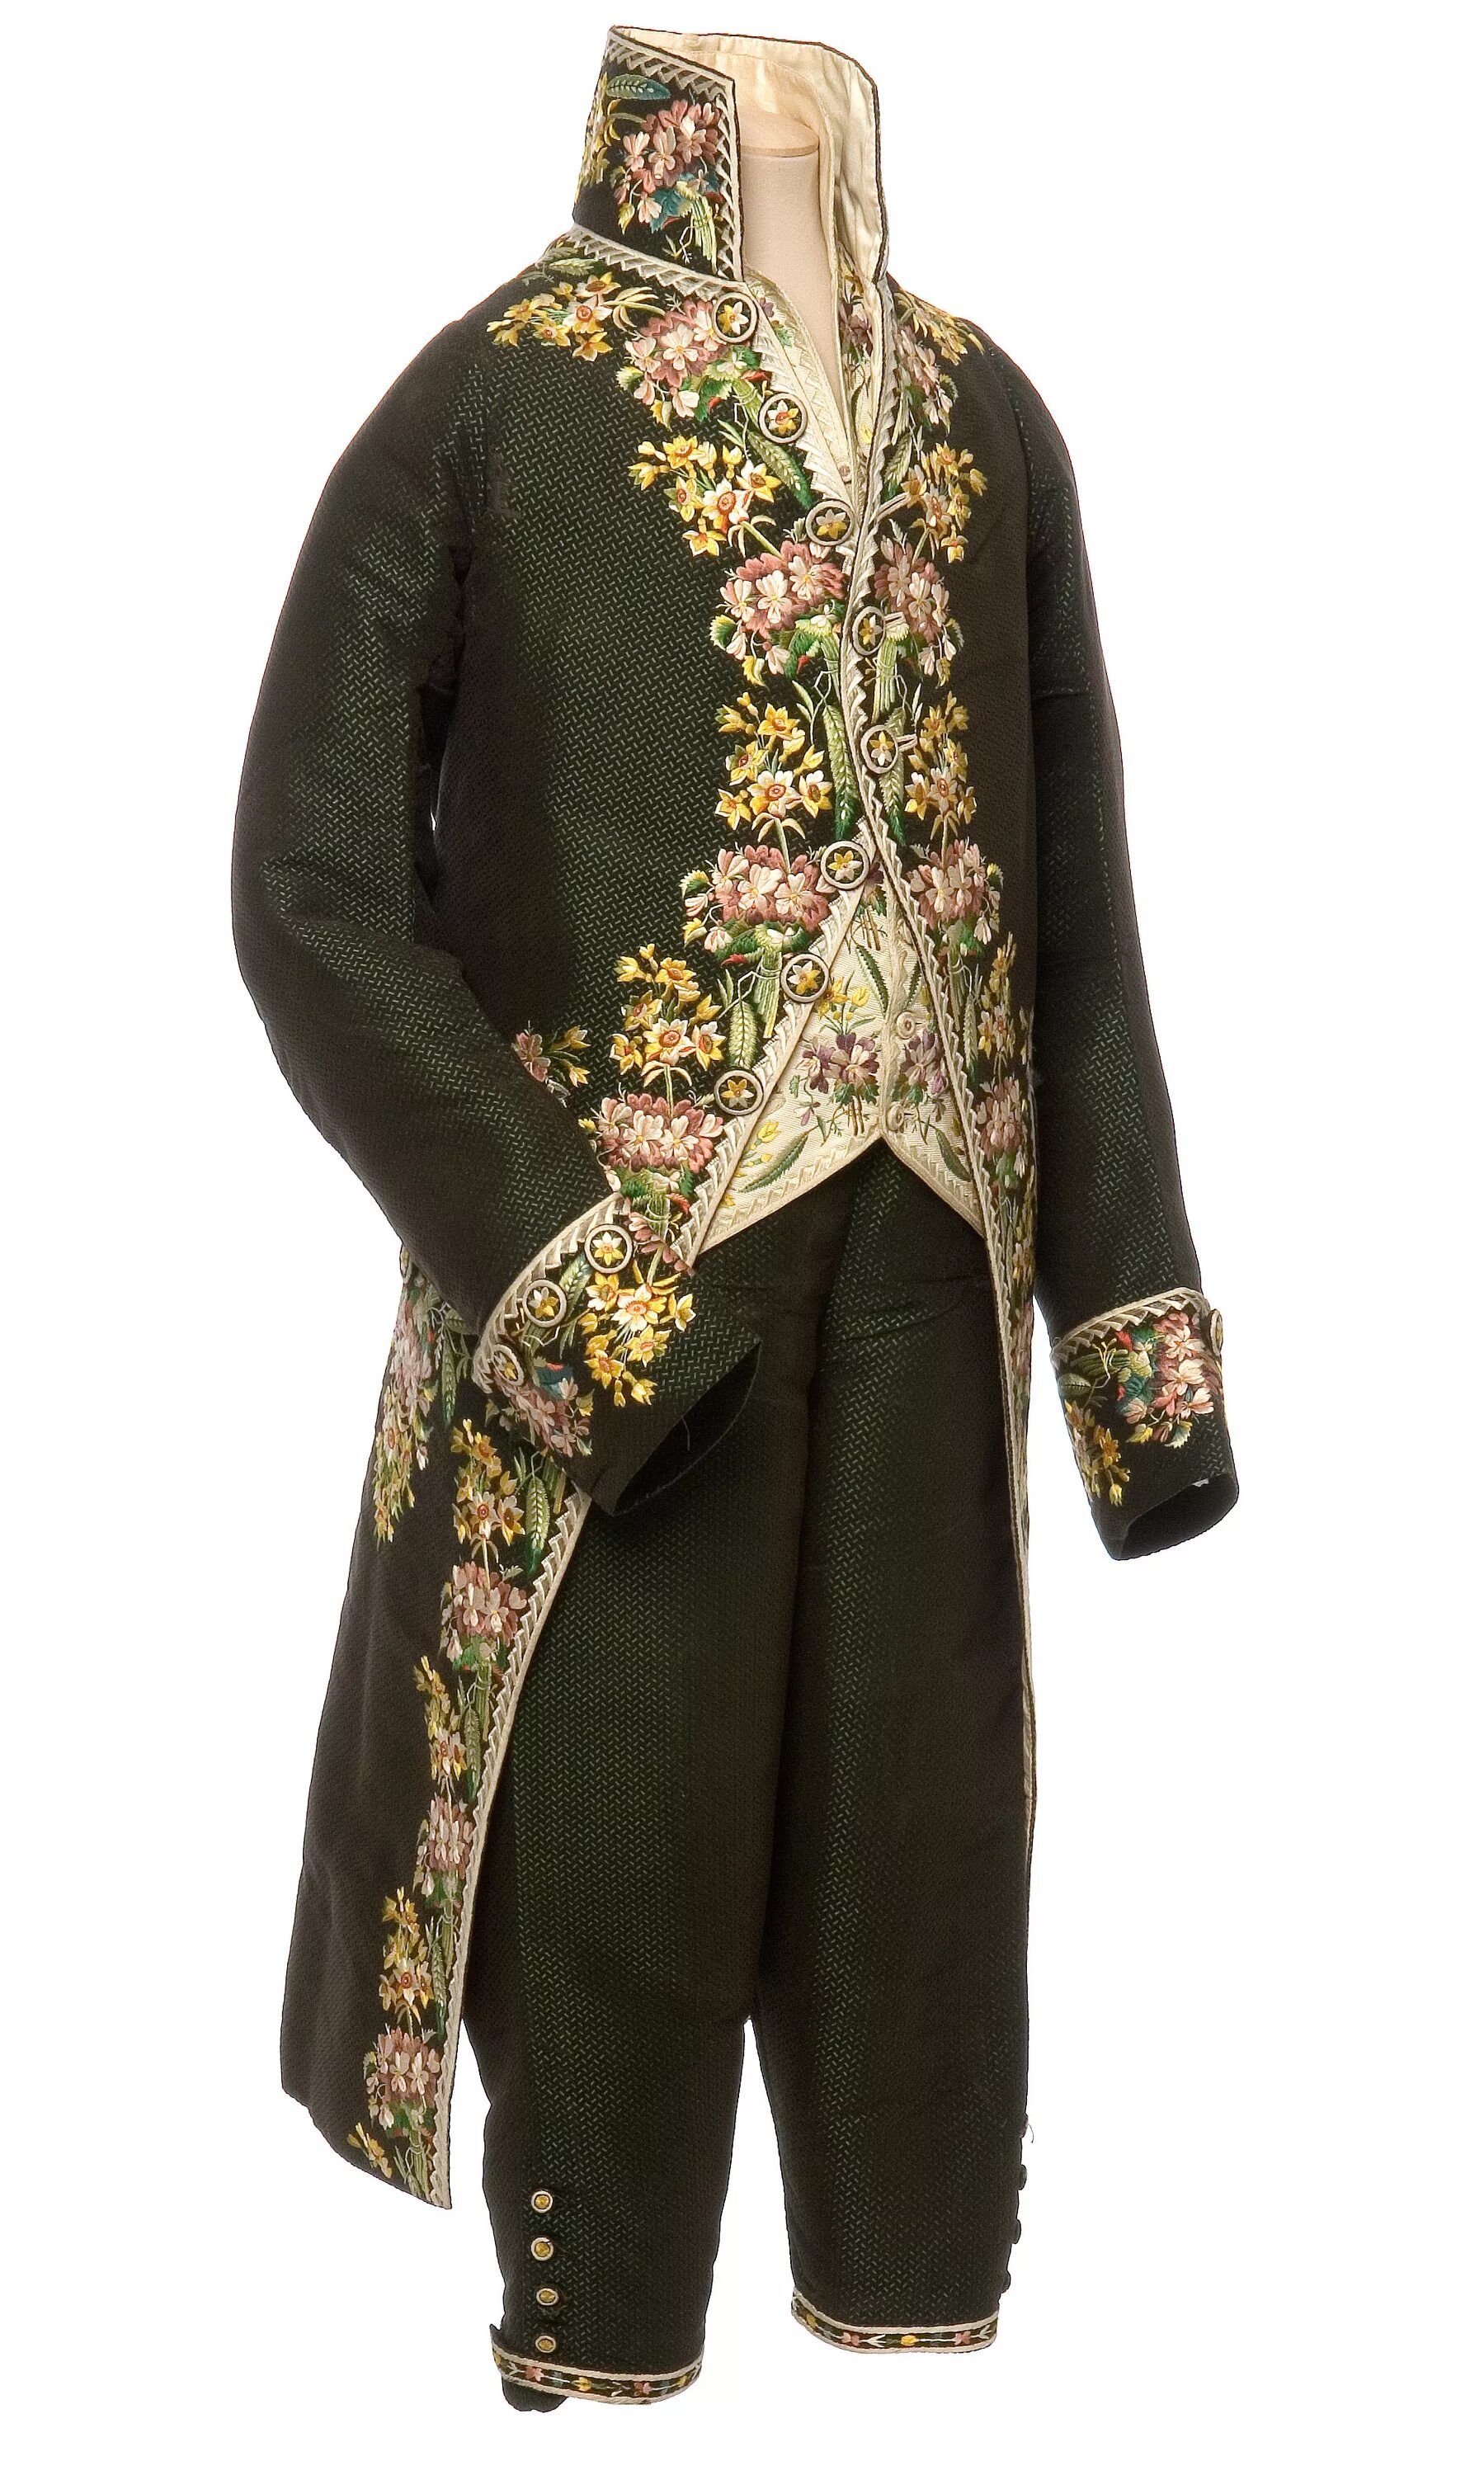 Сюртук также считался. Фрак мужской 19 век. Исторический костюм мужской. Сюртук одежда. Фрак мужской старинный.